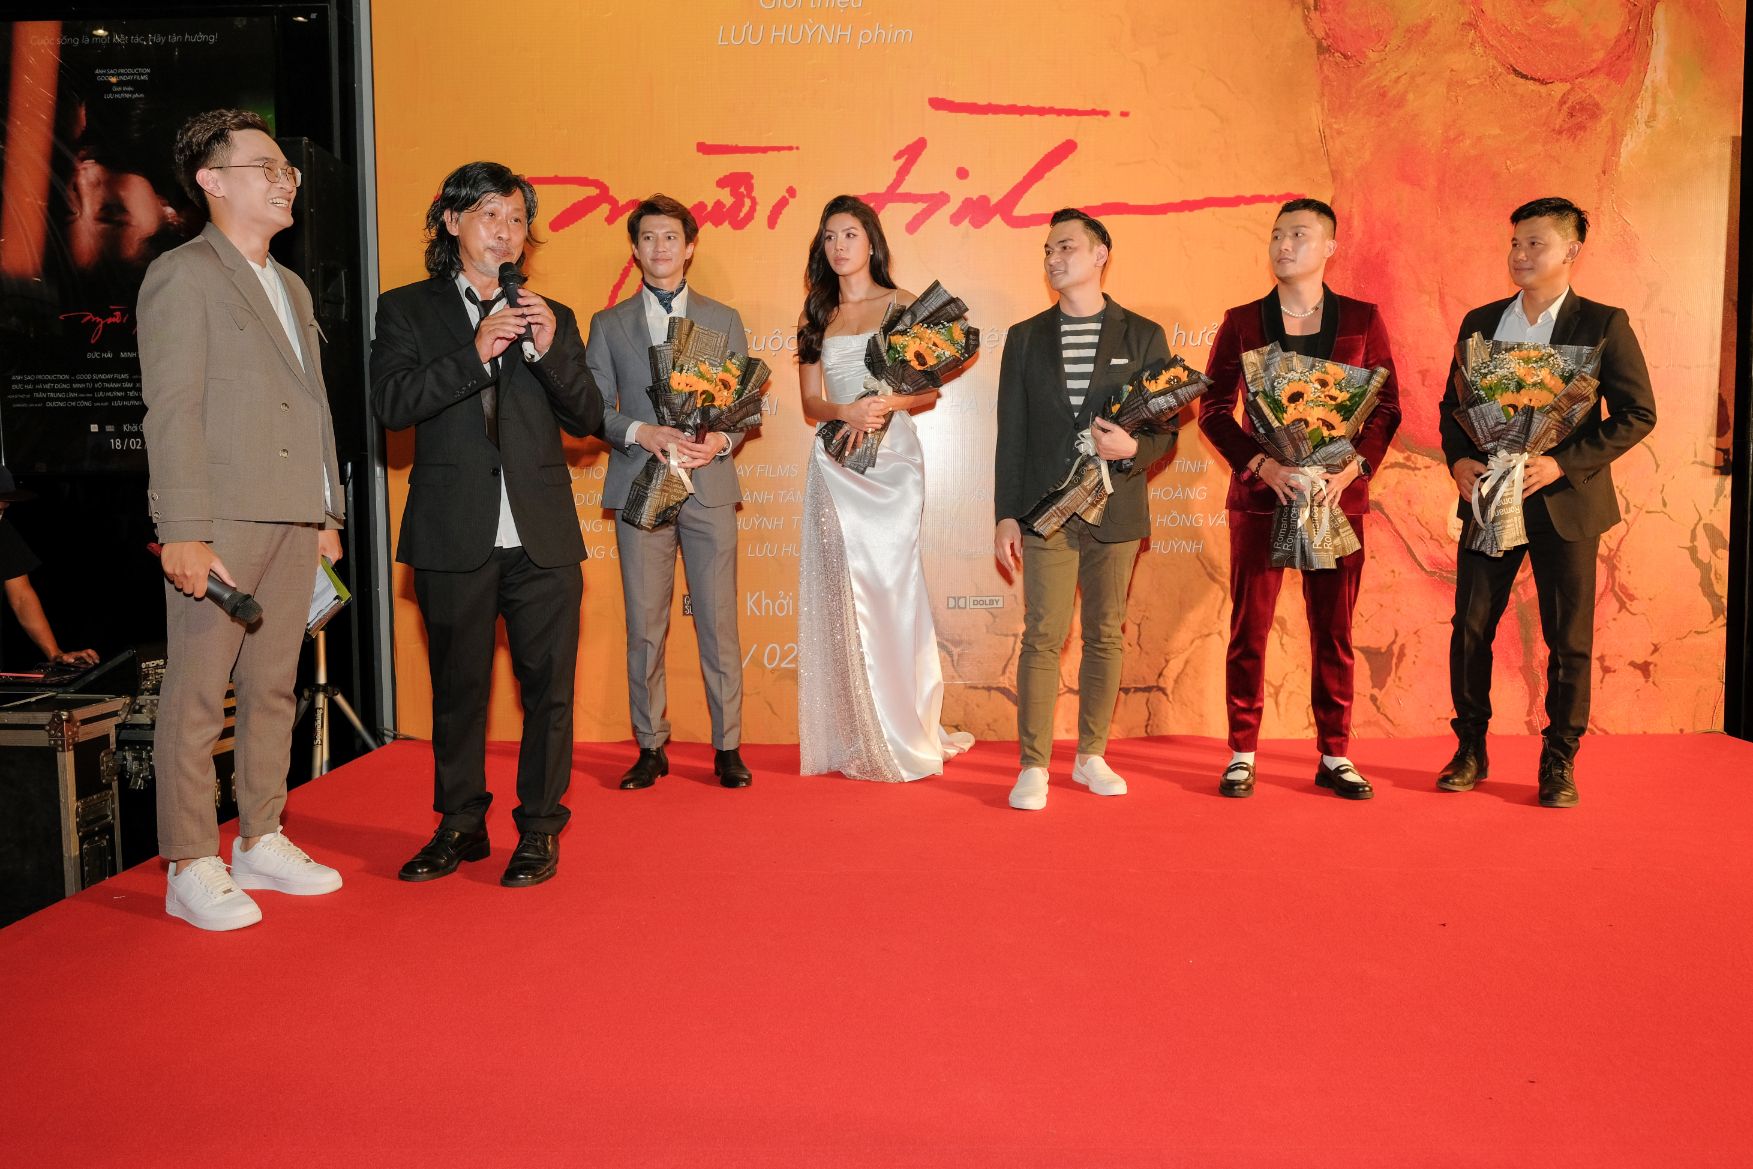 Đạo diễn Lưu Huỳnh và dàn diễn viên Vợ chồng Bình Minh, Chi Bảo... chúc mừng ‘Người tình của Lưu Huỳnh ra rạp sau 5 năm